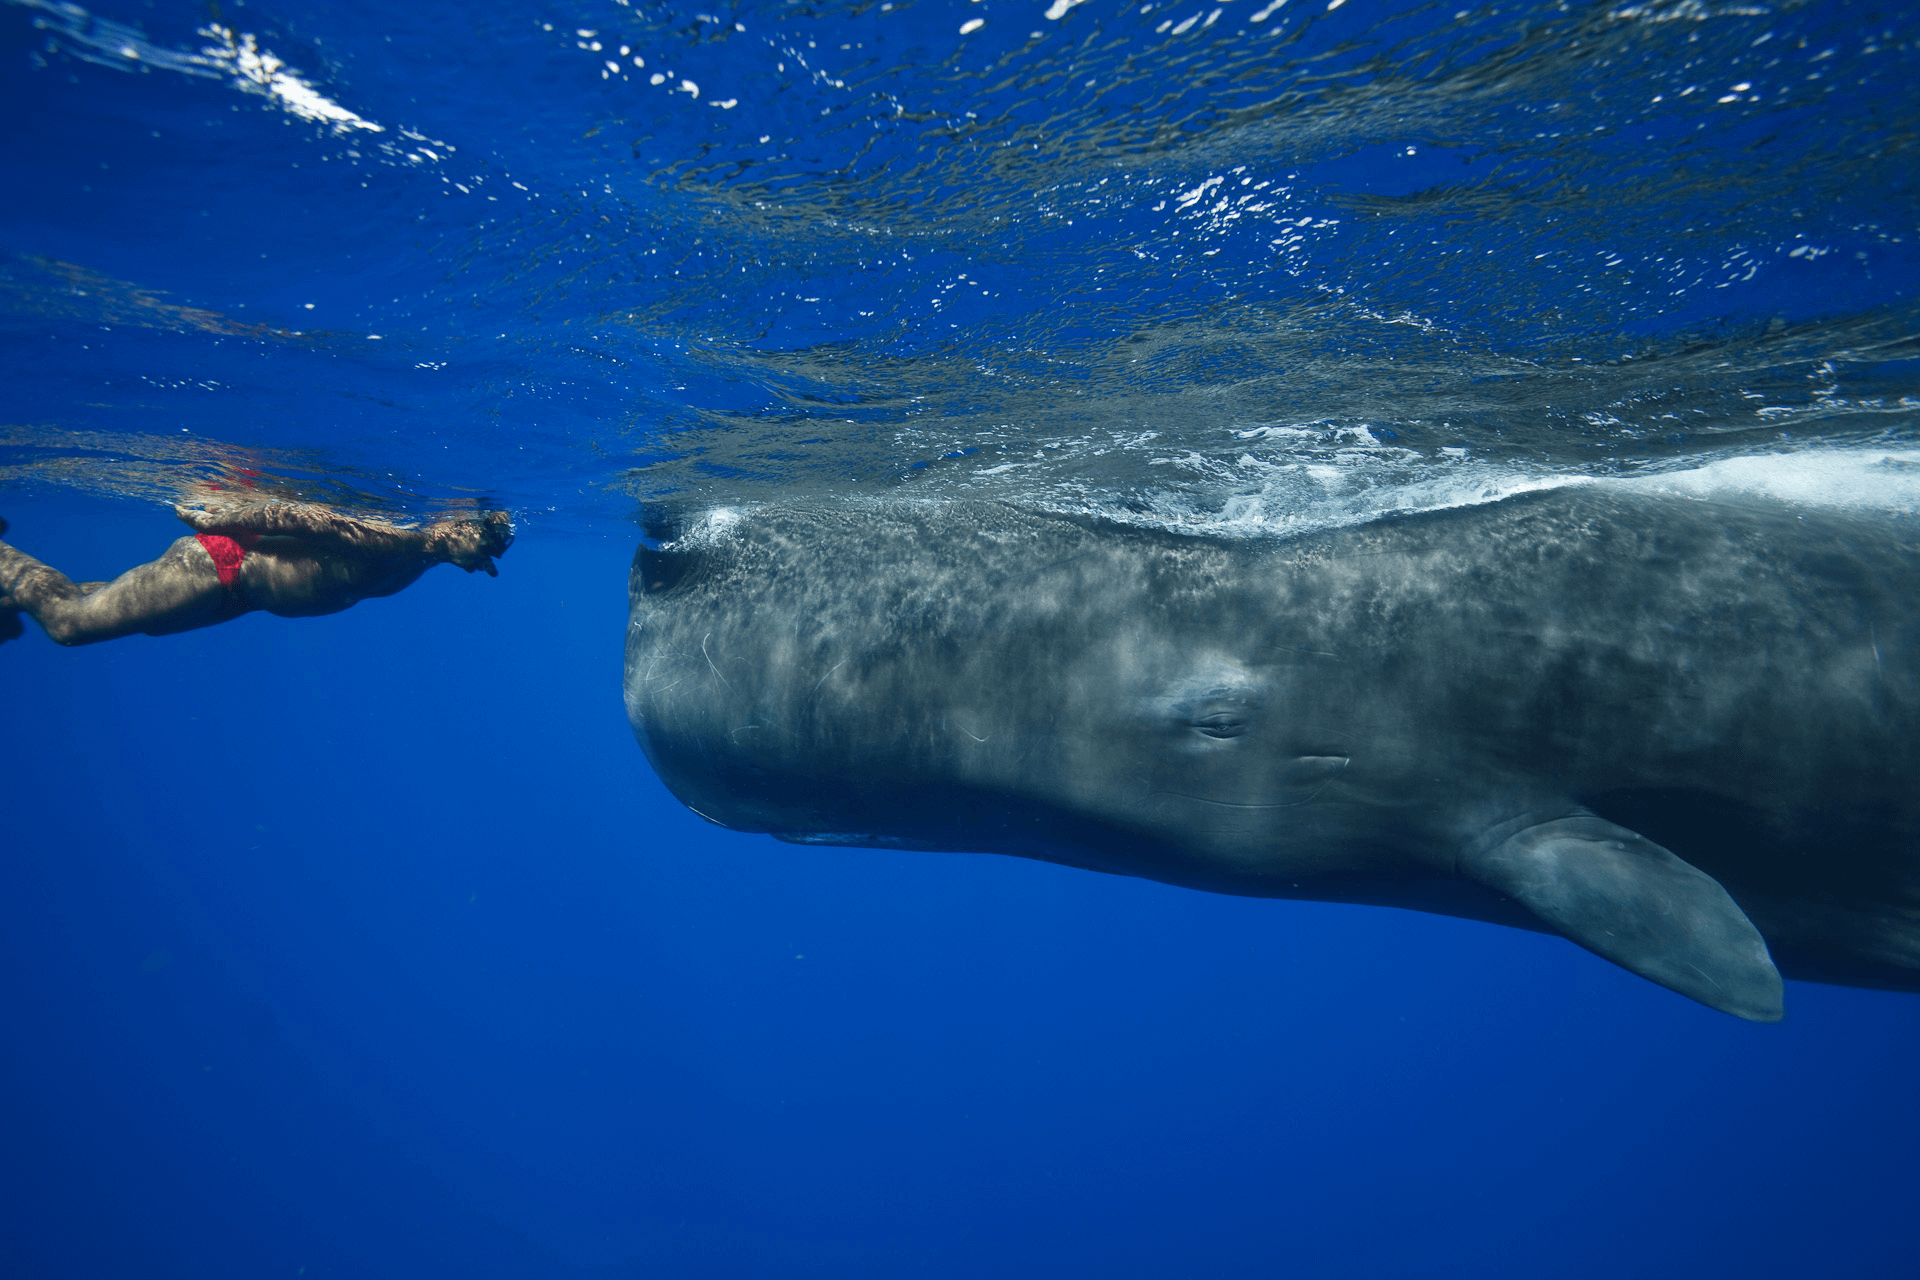 Ein Taucher begegnet einem riesigen Wal von Angesicht zu Angesicht im Meer von Trincomalee in Sri Lanka